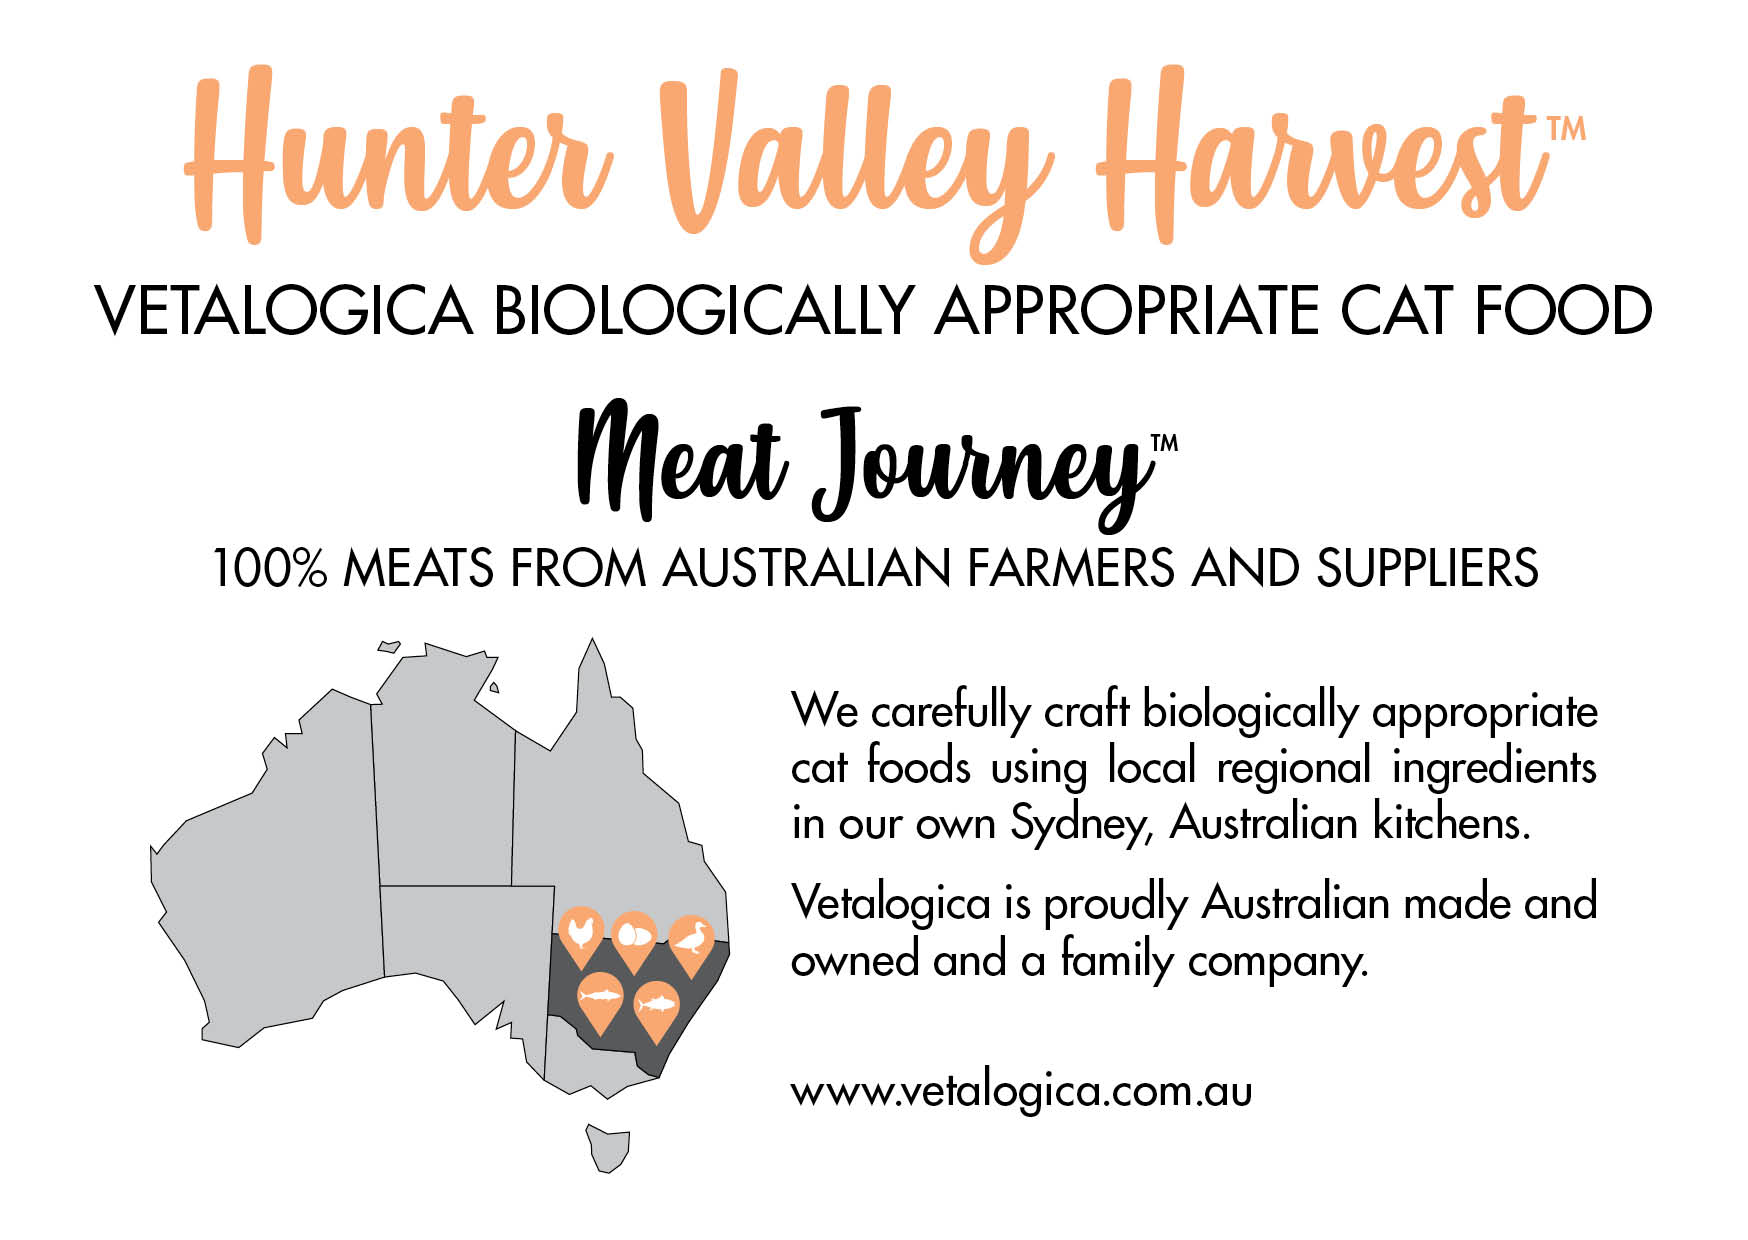 Vetalogica Biologically Appropriate Hunter Valley Harvest Adult Cat Food 3kg